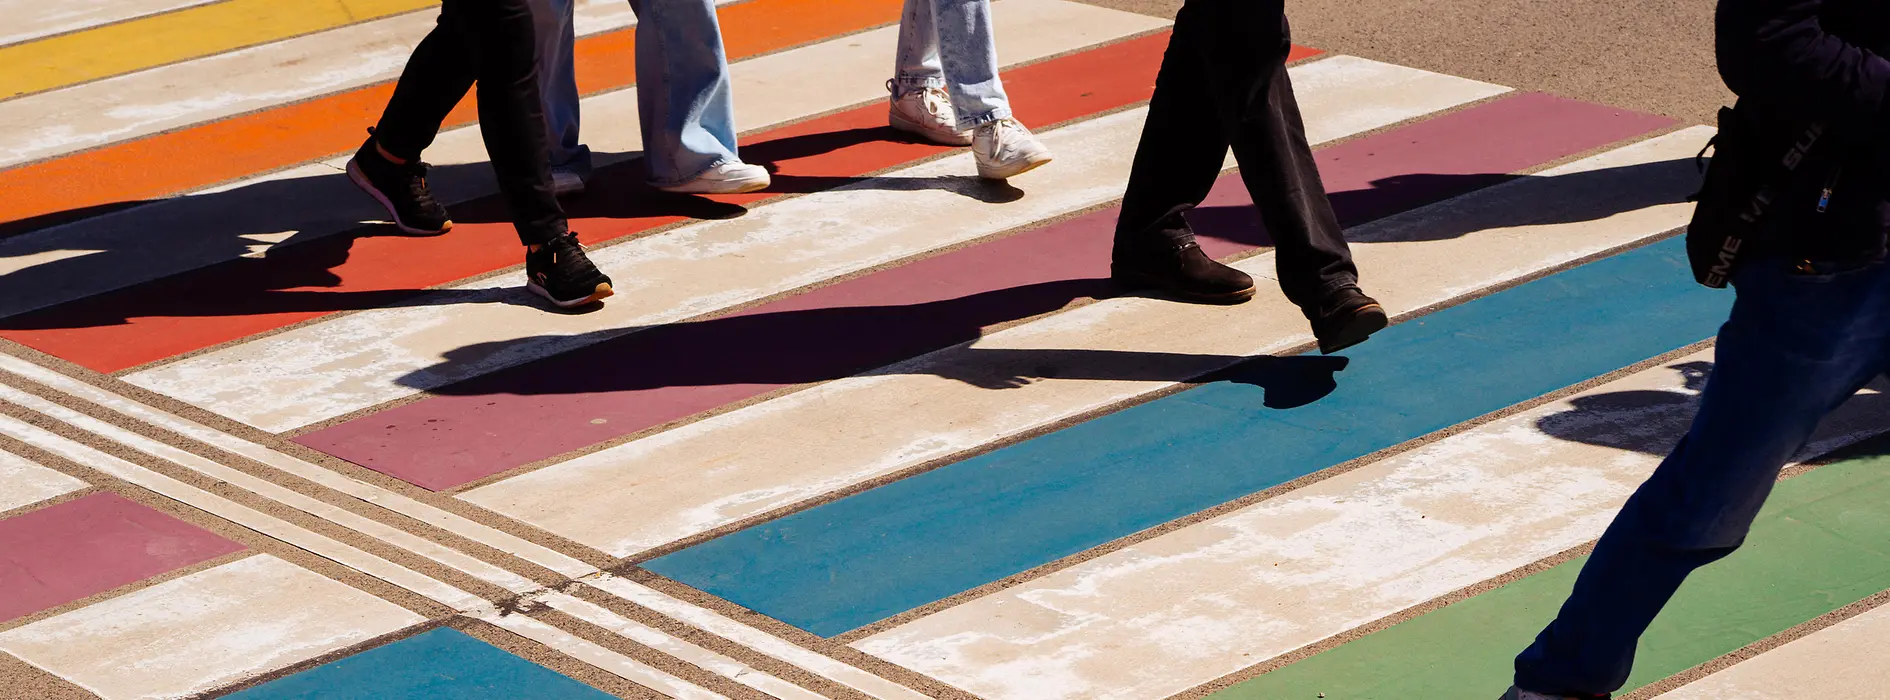 ウィーン市内 虹色の横断歩道を渡る人たち